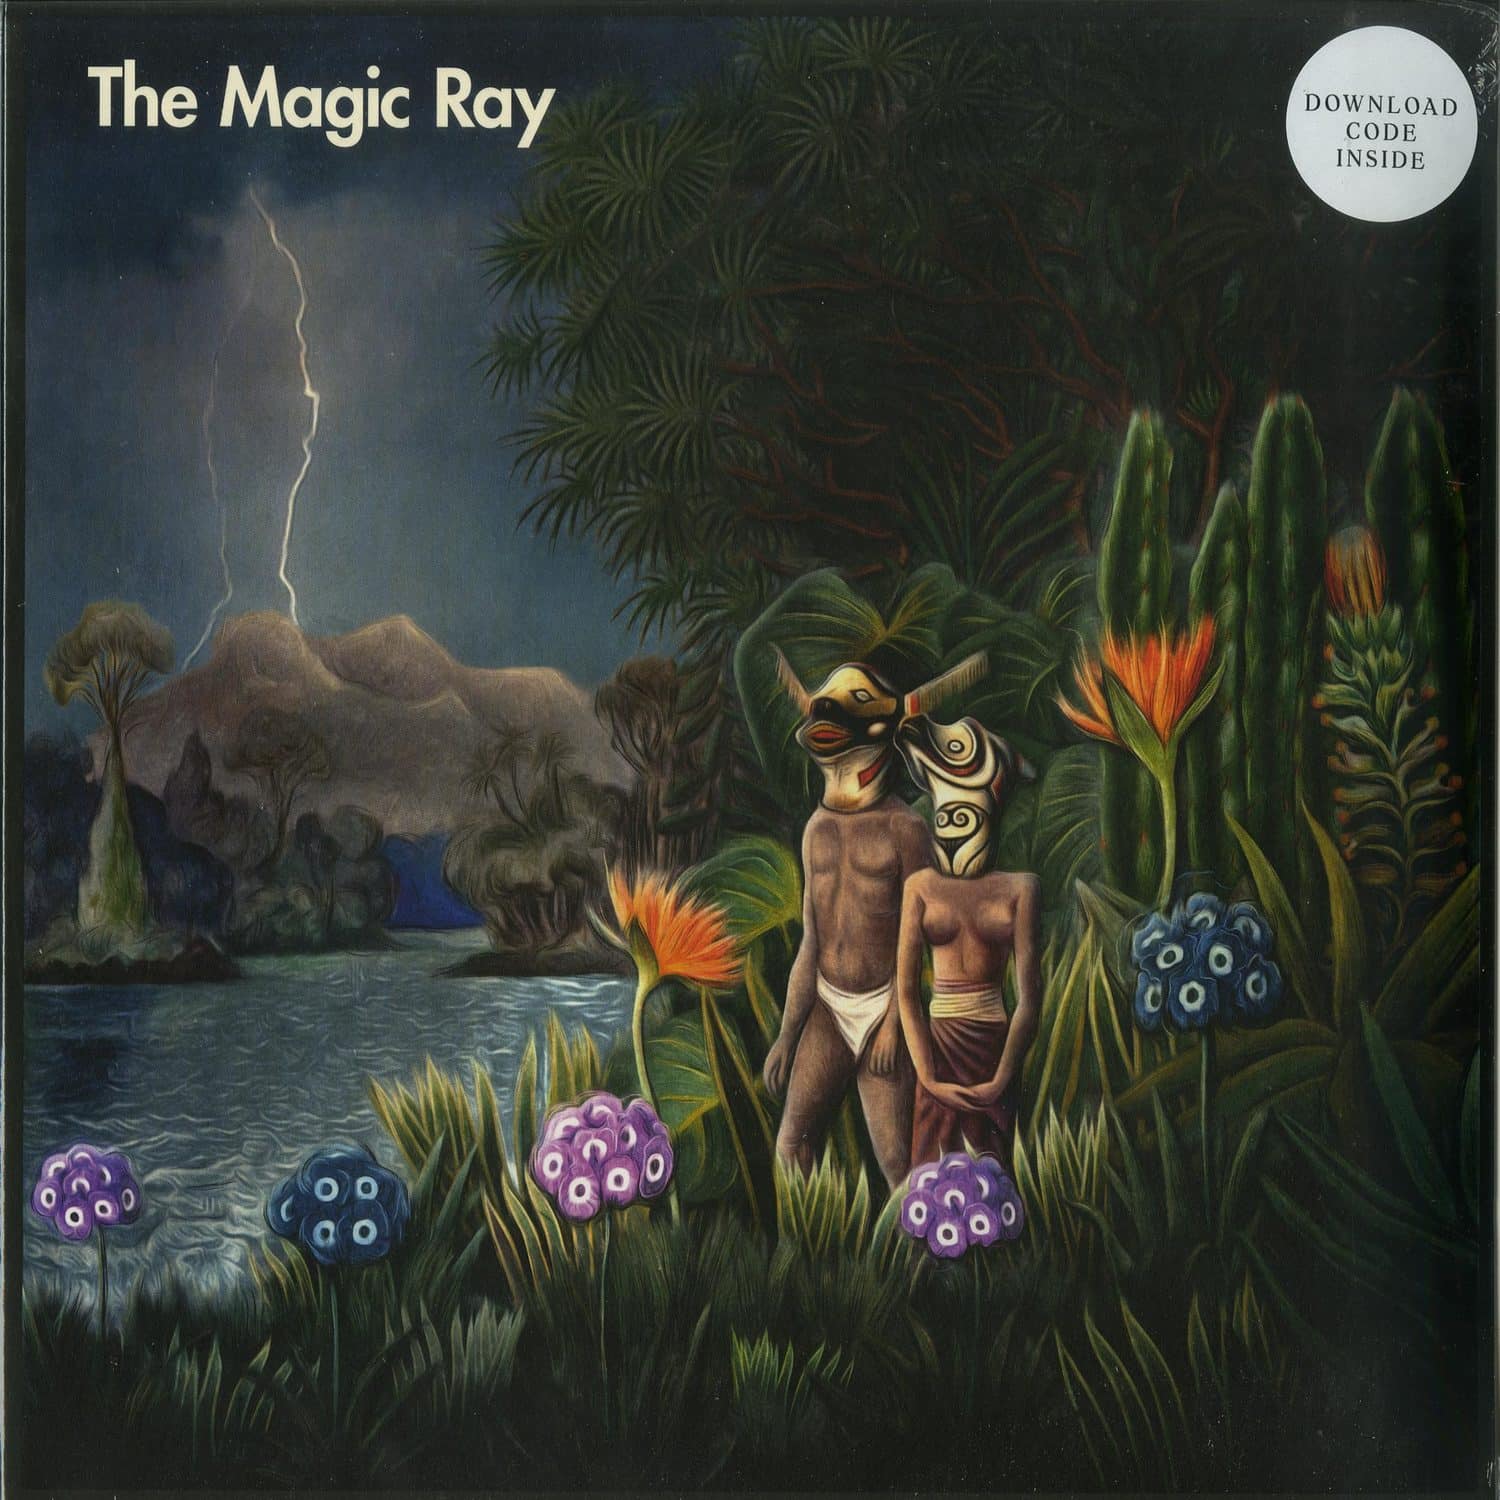 The Magic Ray - THE MAGIC RAY 